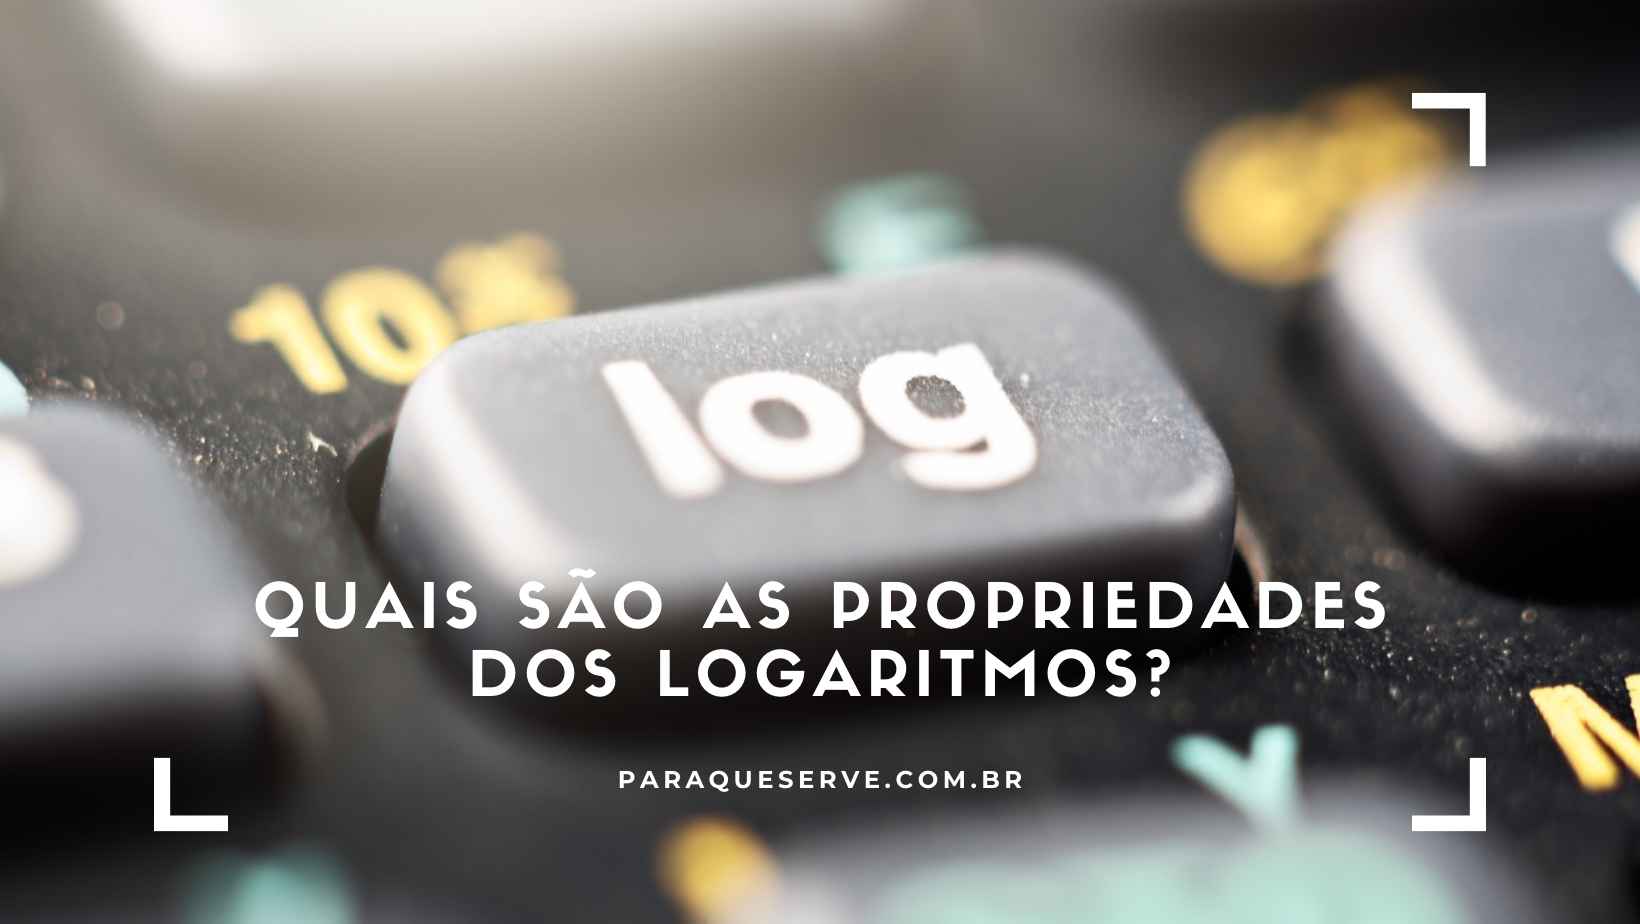 Quais são as propriedades dos logaritmos?